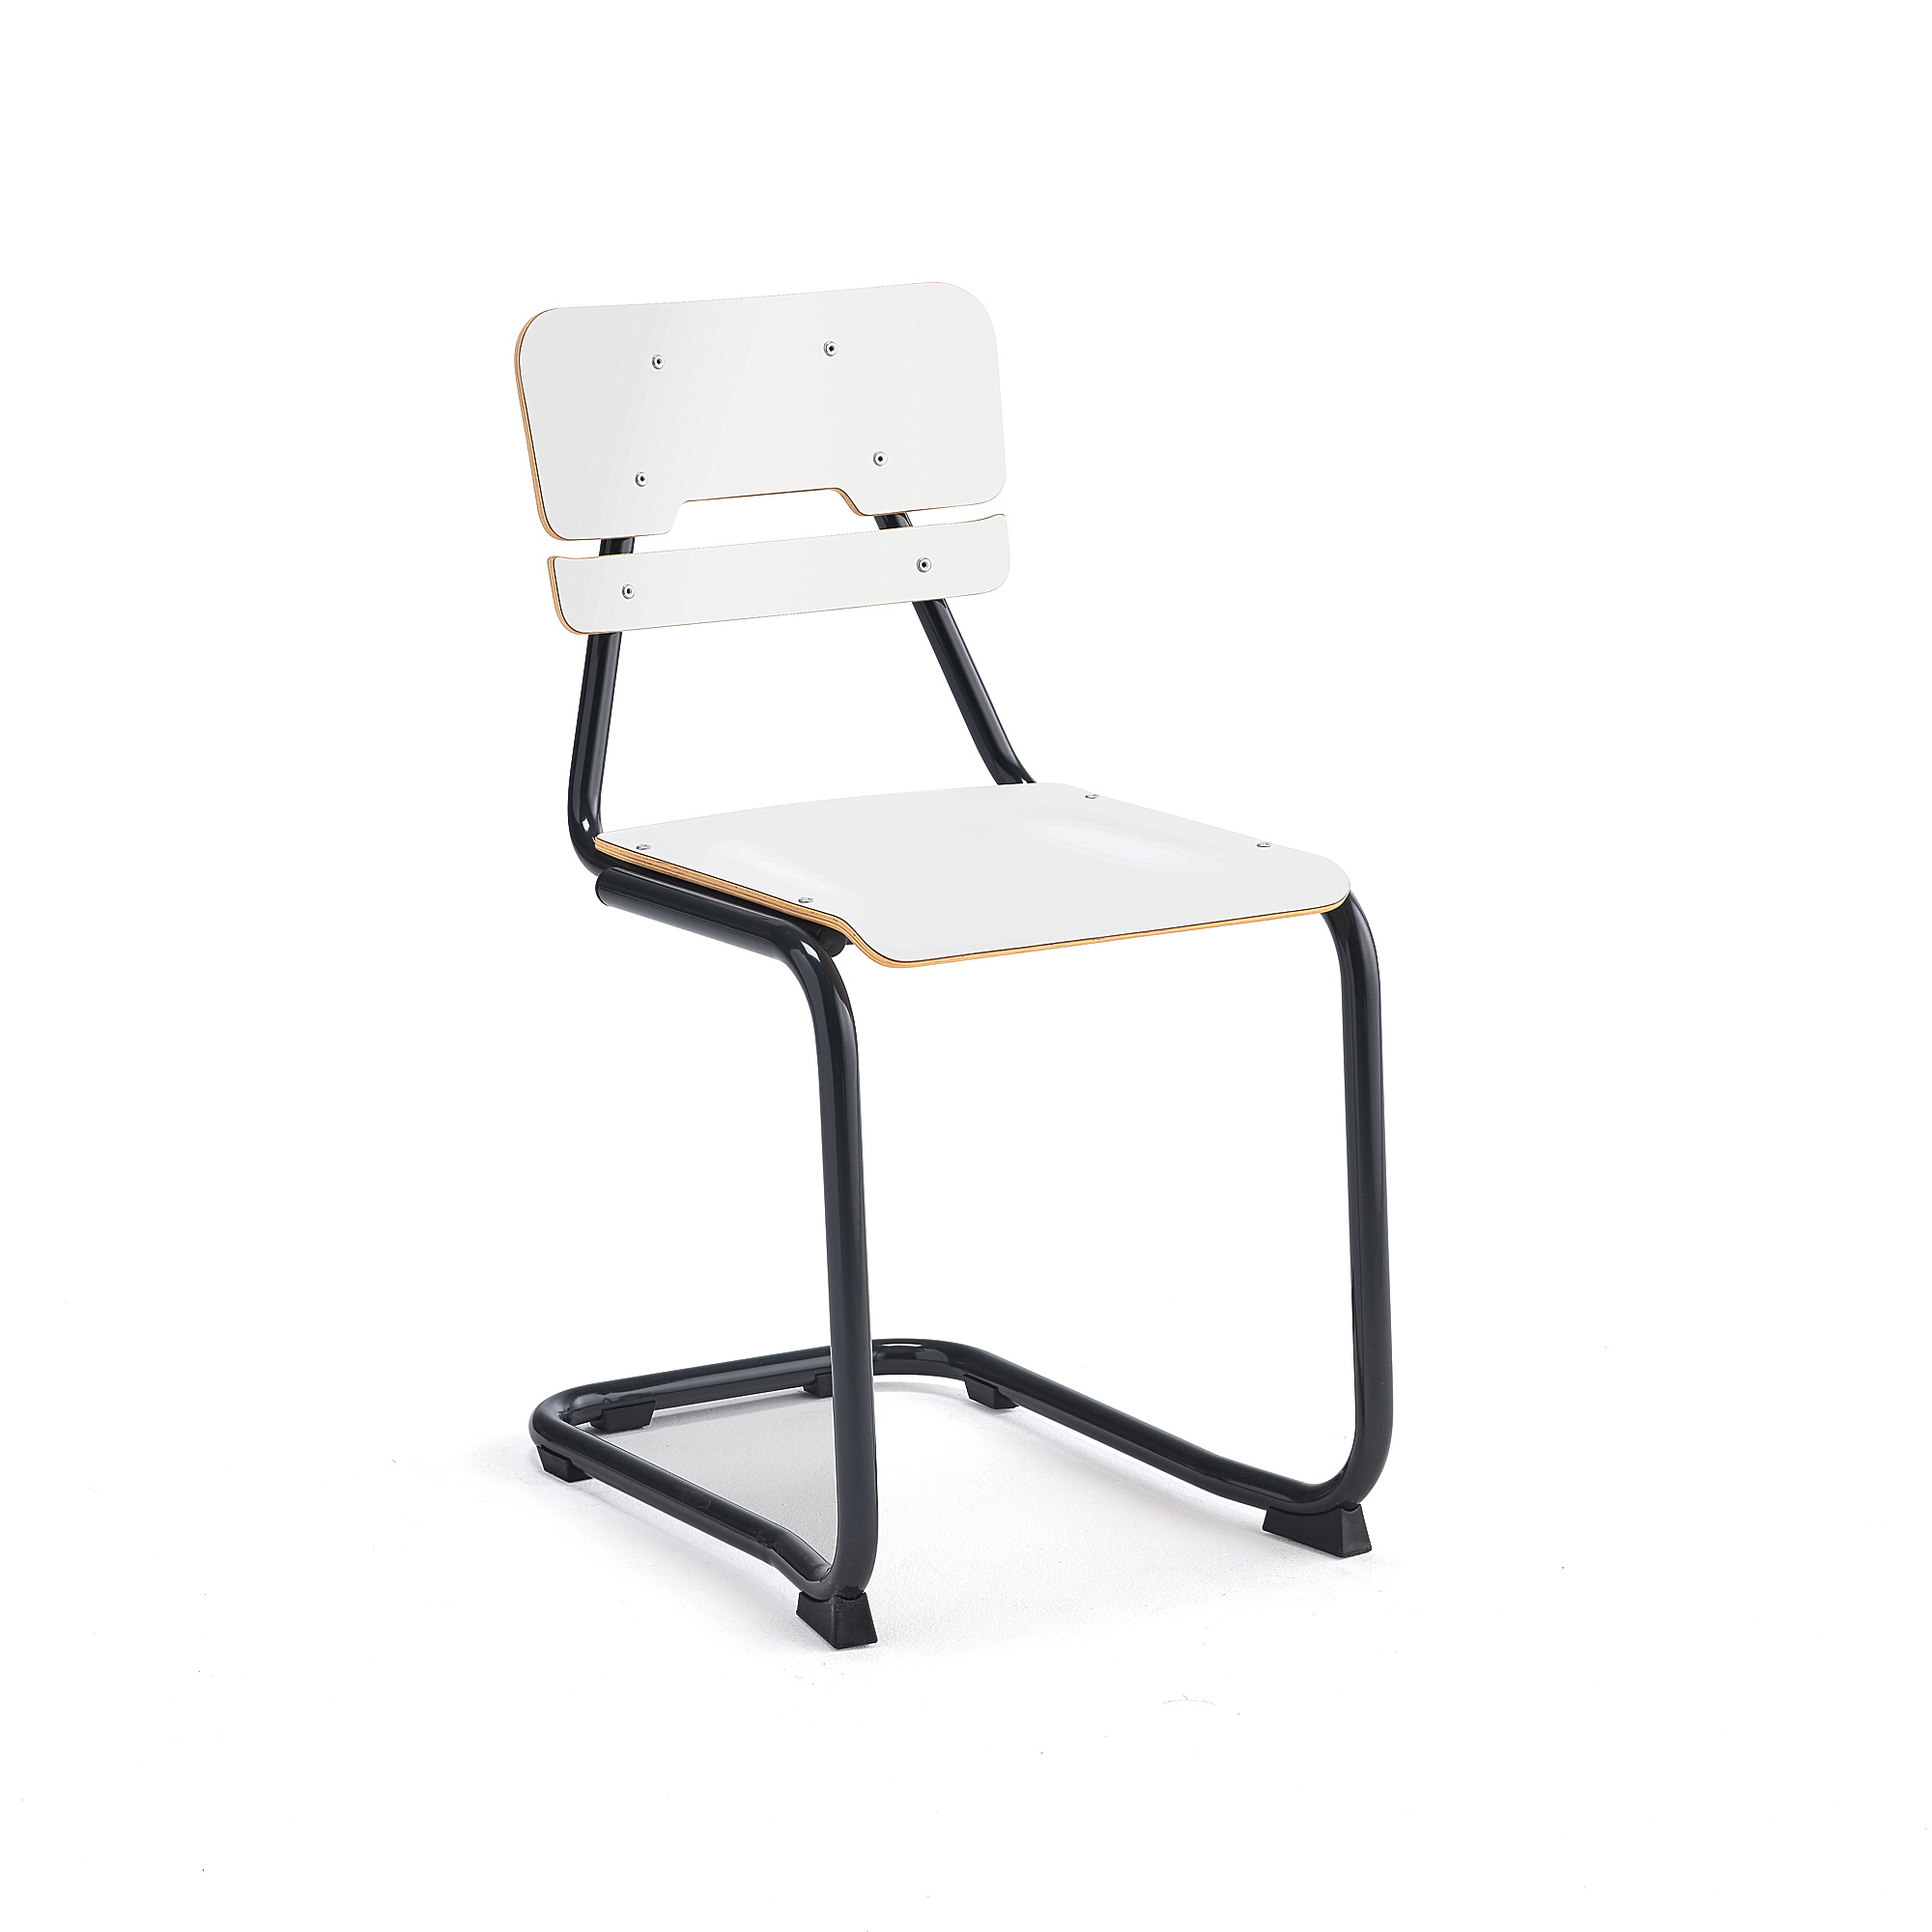 Školní židle LEGERE I, výška 450 mm, antracitově šedá, bílá